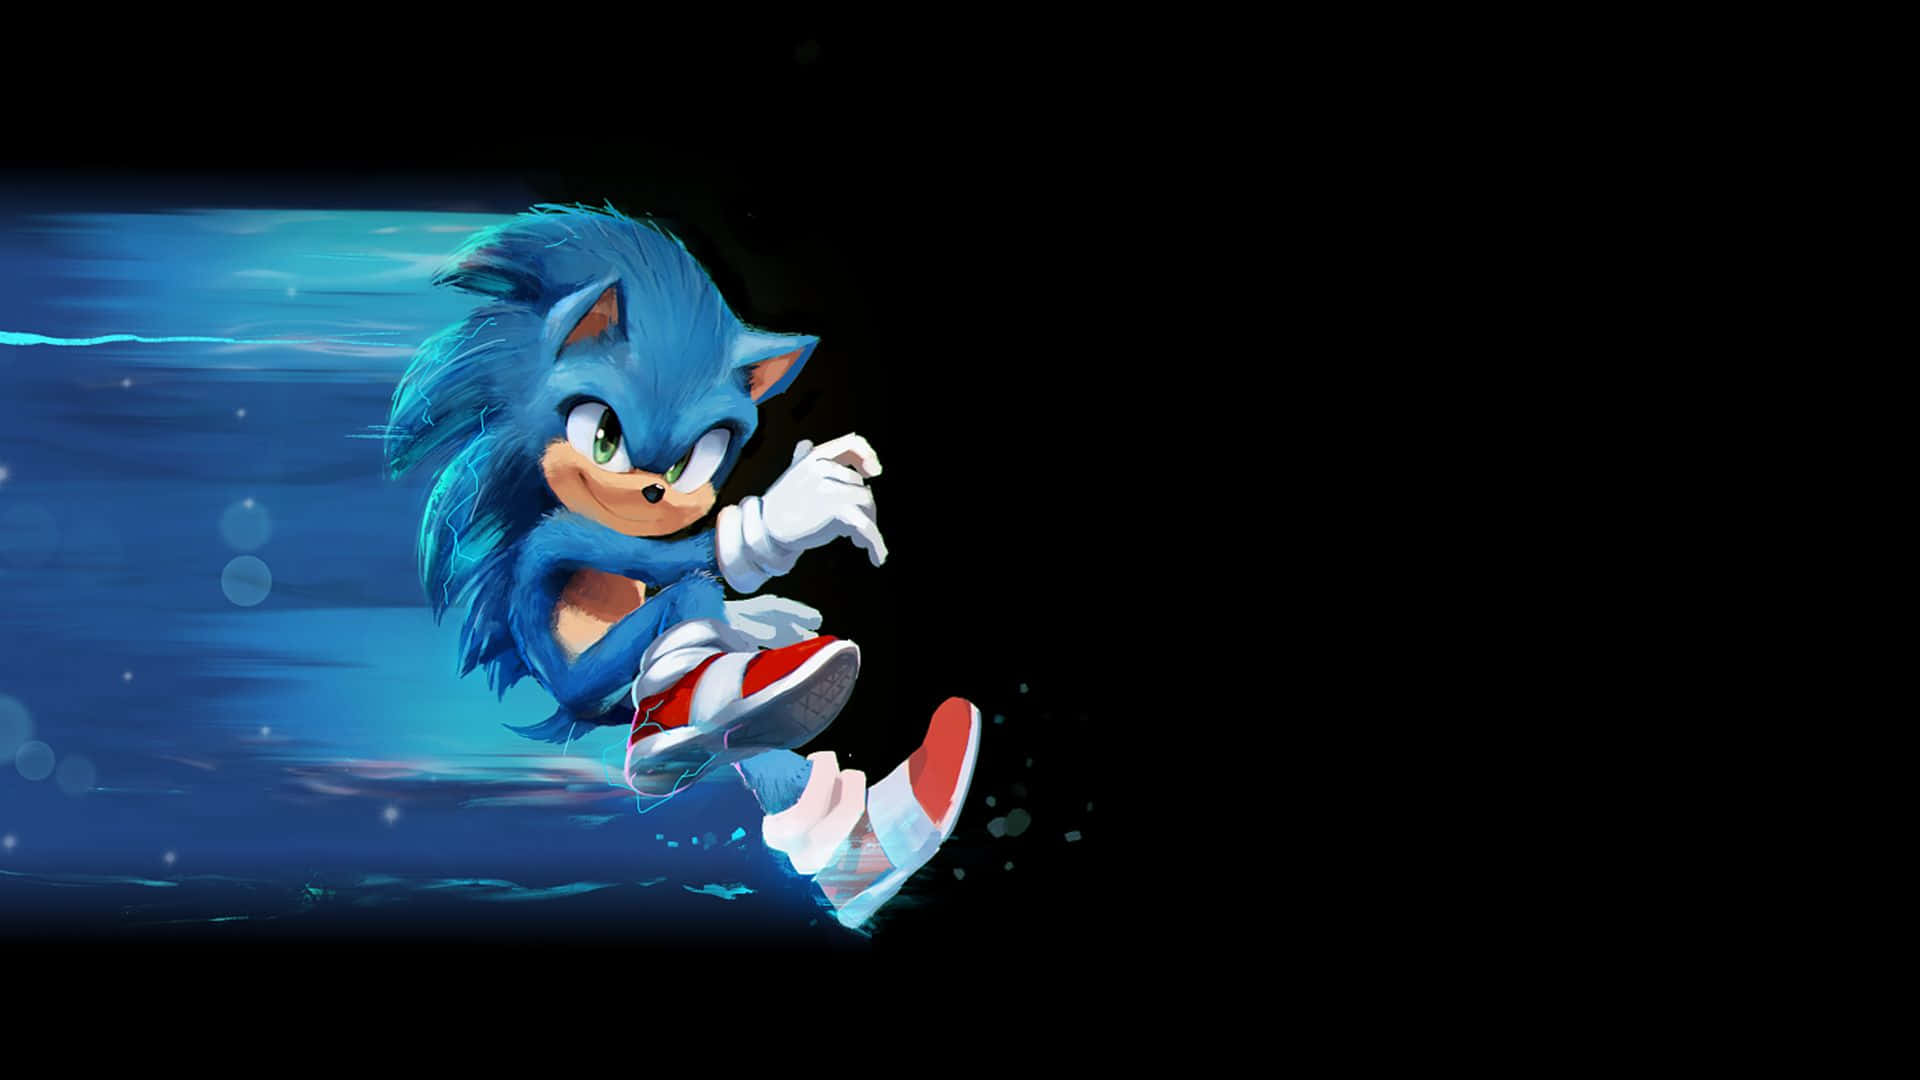 Sonicthe Hedgehog Ist Bereit, Sich Auf Ein Abenteuer Zu Stürzen! Wallpaper